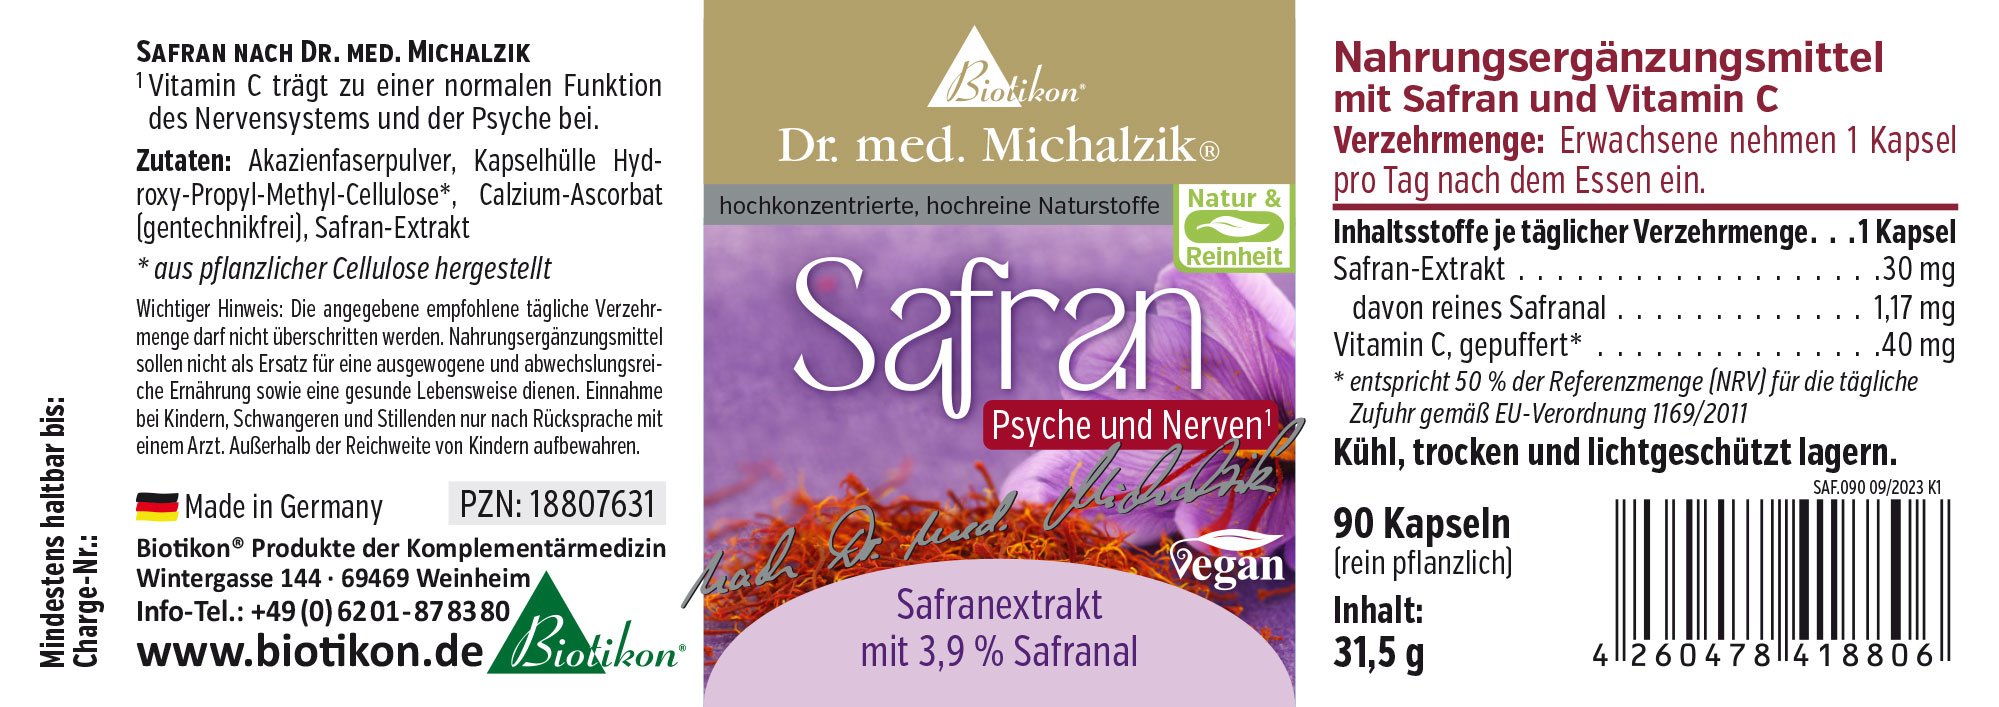 Safran nach Dr. med. Michalzik